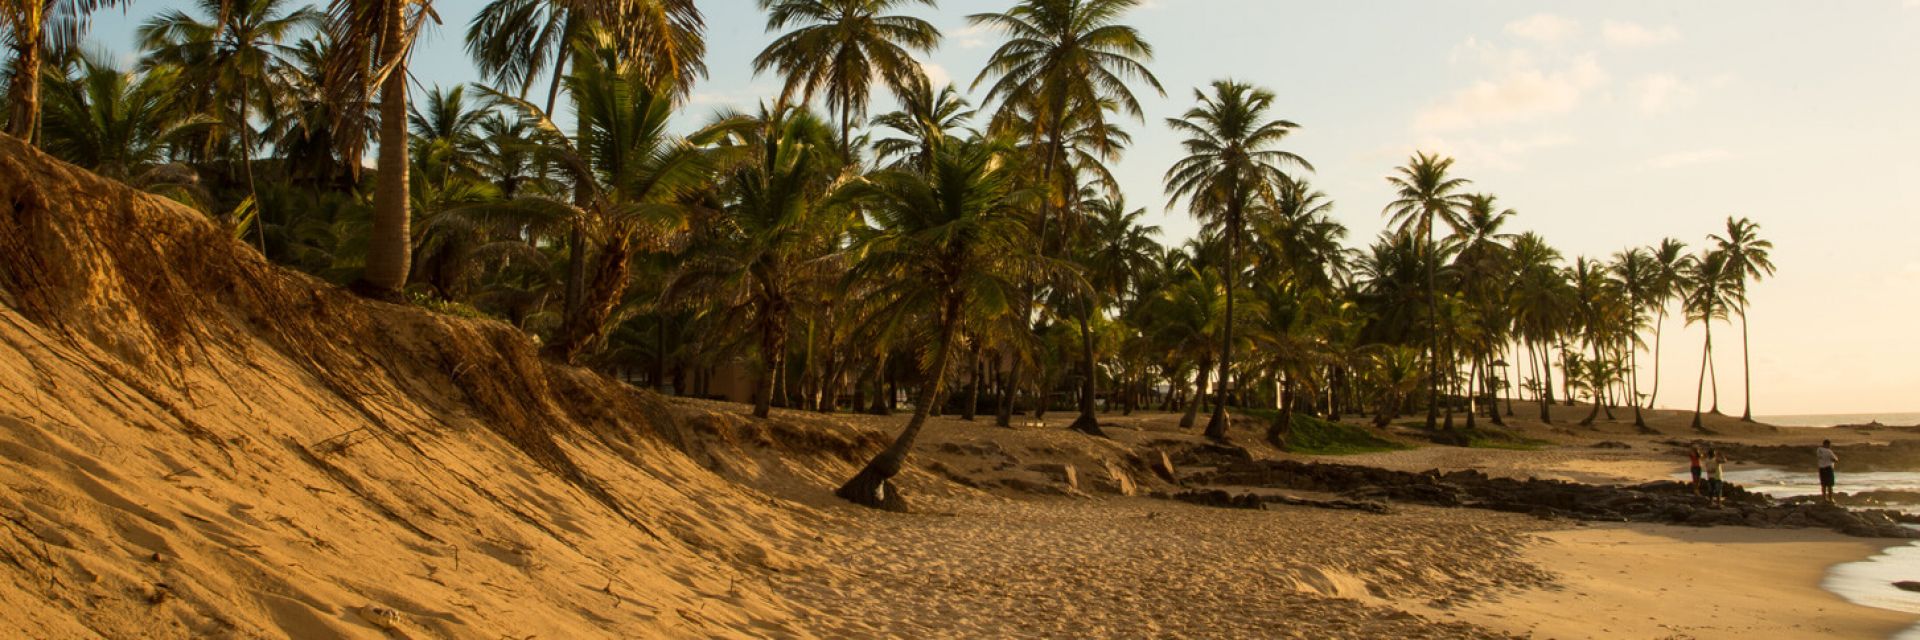 Conheça as praias de Salvador e monte seu roteiro de viagem